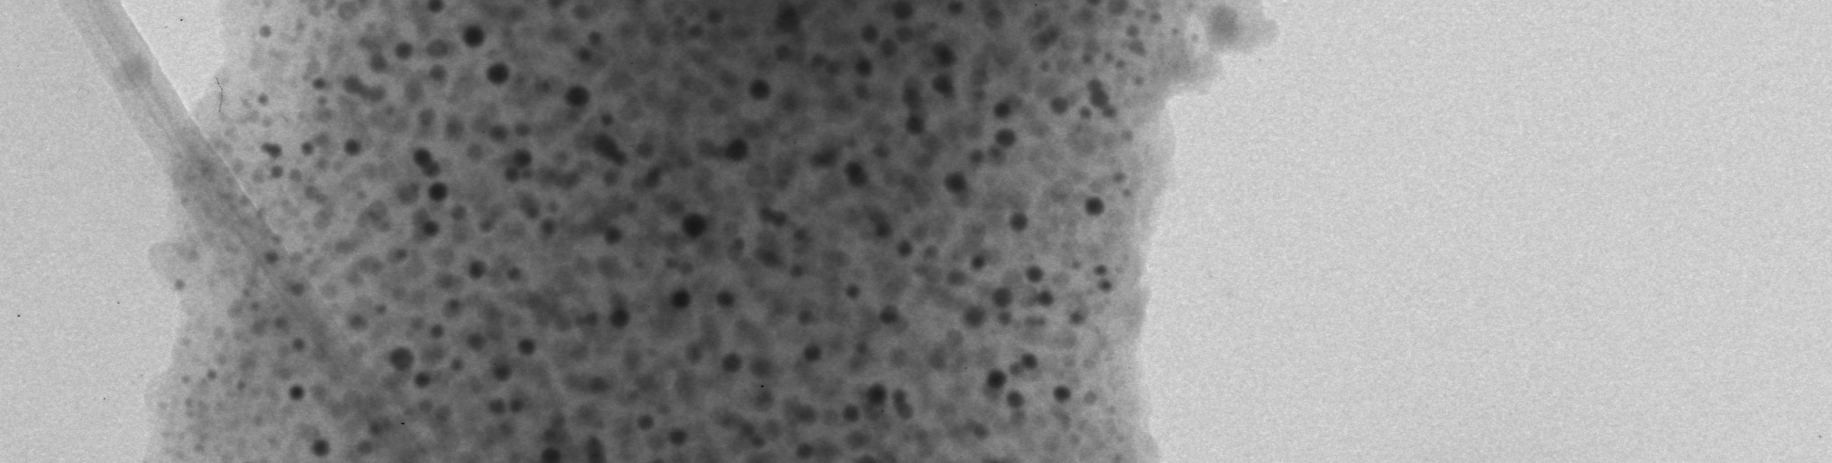 A nanorészecske kvalitatív elemzésébıl kiolvasható, hogy a kotérhálóban a nanorészecskék fıbb komponense a réz, de fellelhetı a só